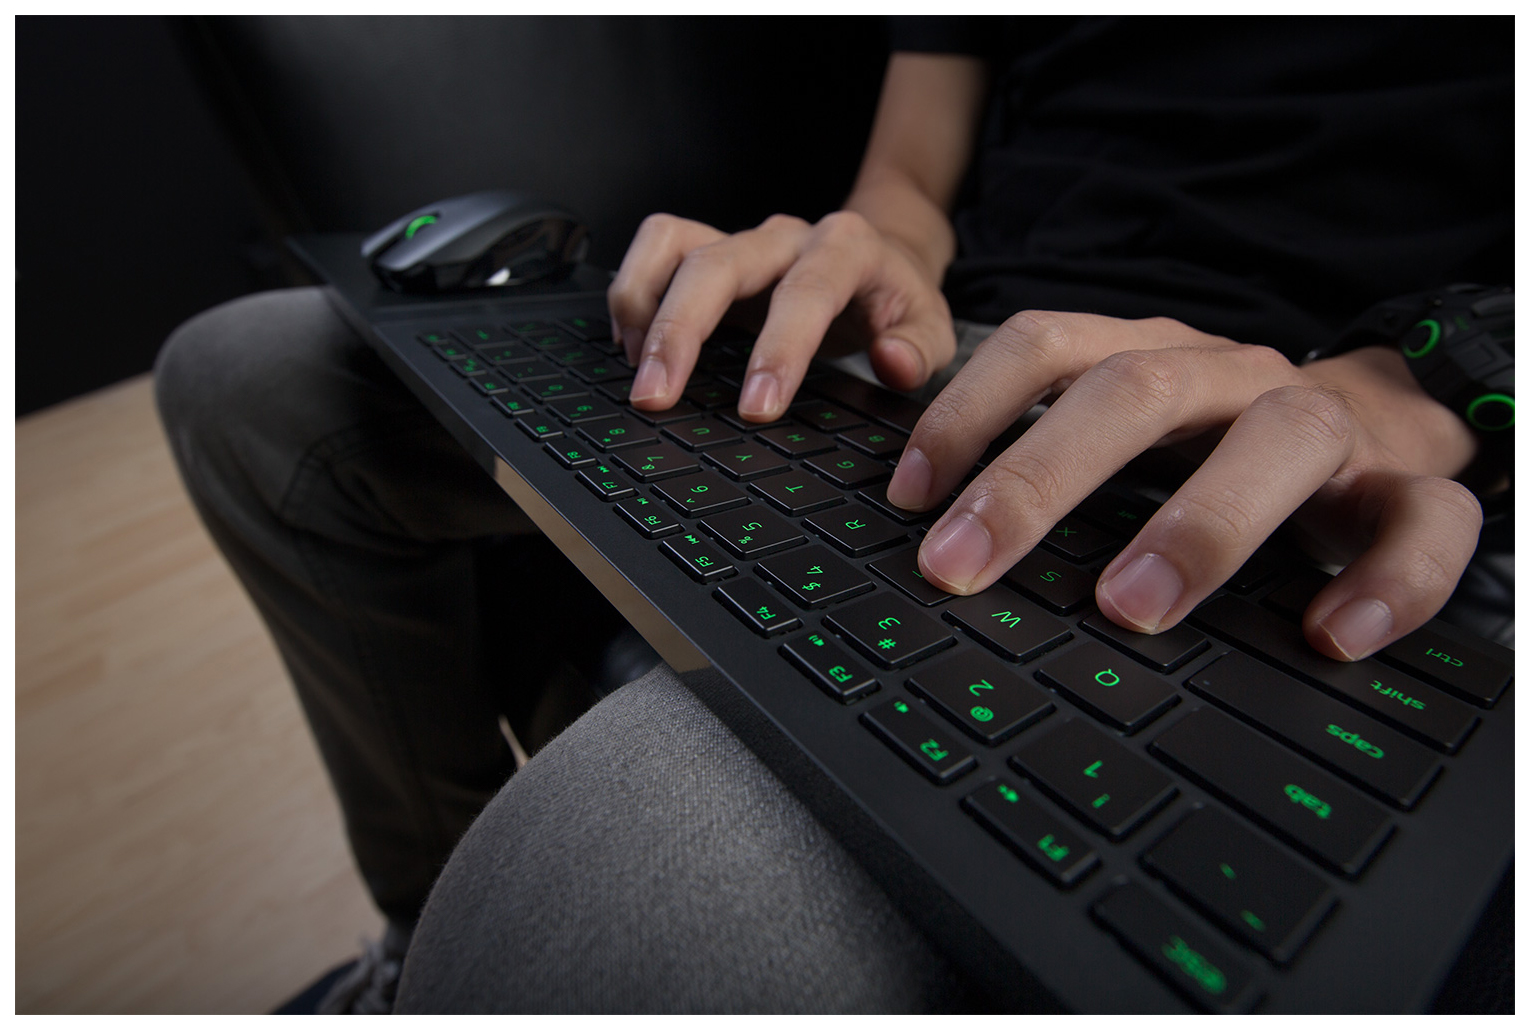 Игры на xbox поддерживающие клавиатуру и мышь. Мышь и клавиатура Razer Turret. Клавиатура и мышь для хбокс. Клавиатура и мышь для Xbox one. Хбокс с клавиатурой и мышкой.